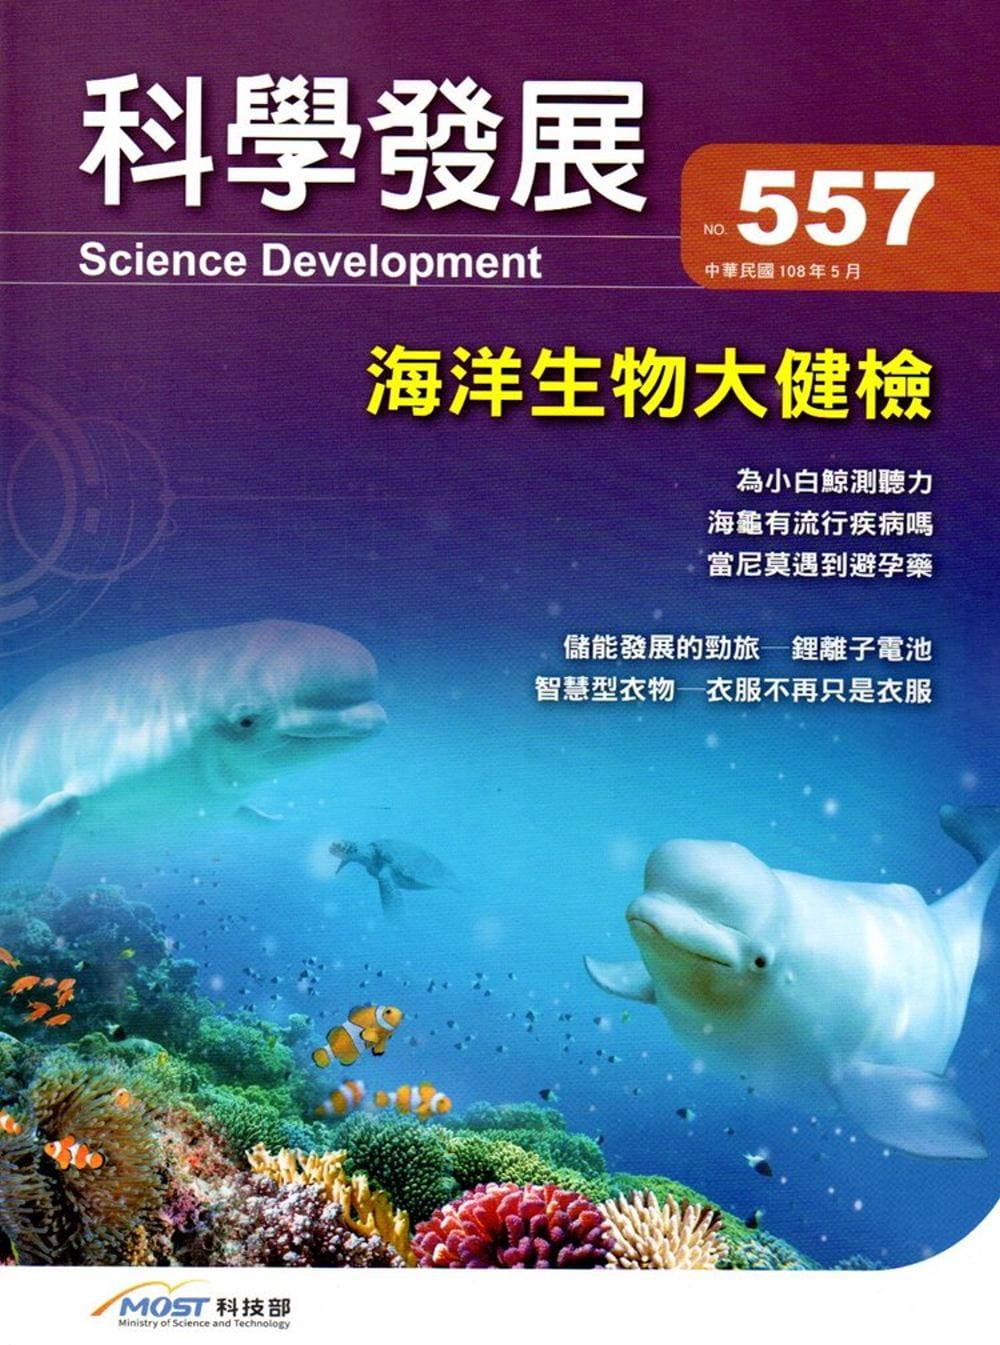 科學發展月刊第557期(108/05)